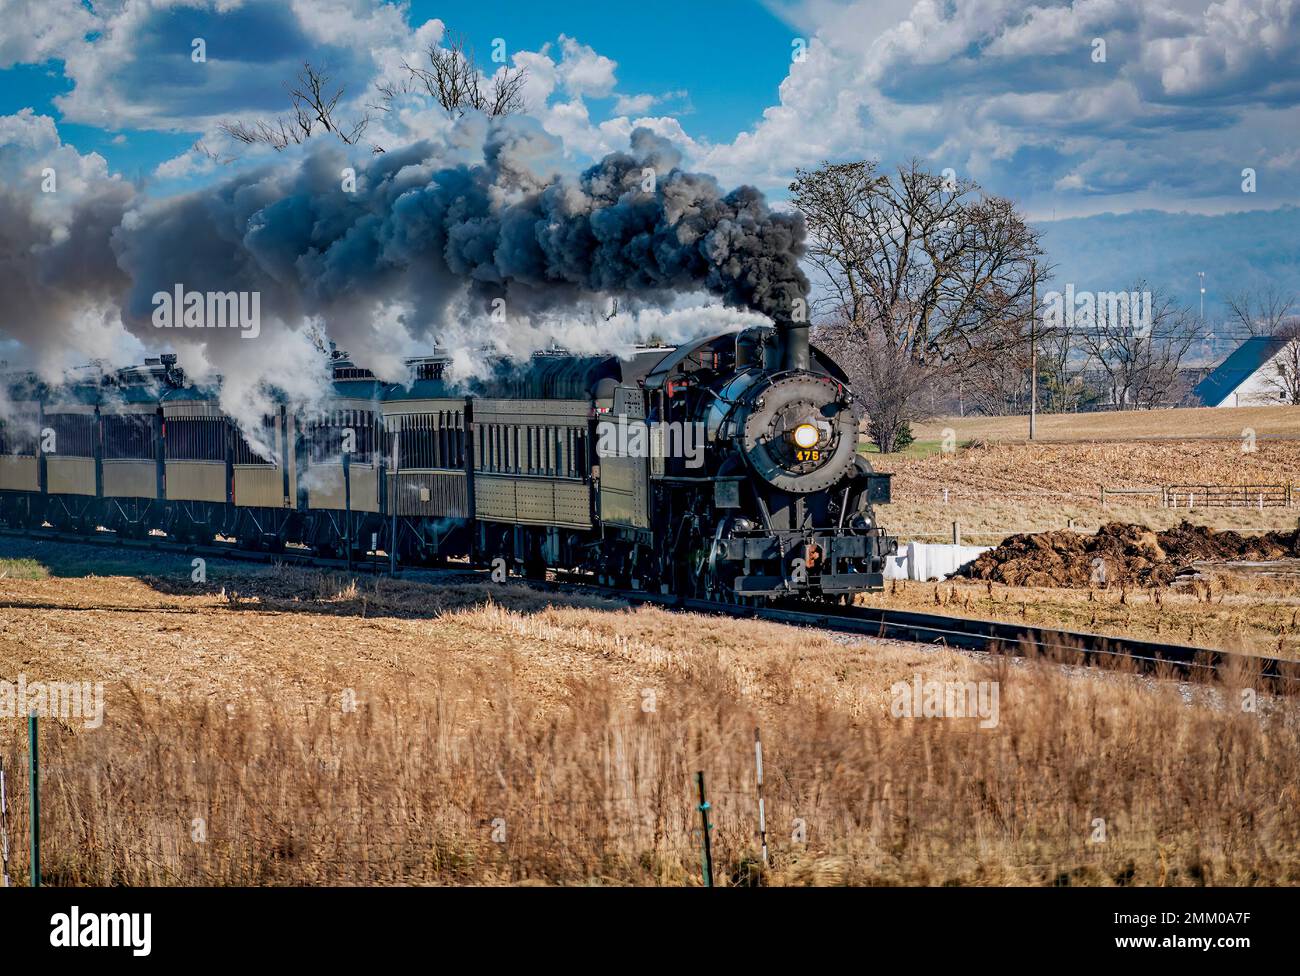 Ronks, Pennsylvanie, 28 décembre 2022 - Vue sur un train de passagers à vapeur classique qui s'approche, se déplace à travers la campagne, souffle de fumée et de vapeur lors d'une journée d'hiver Banque D'Images